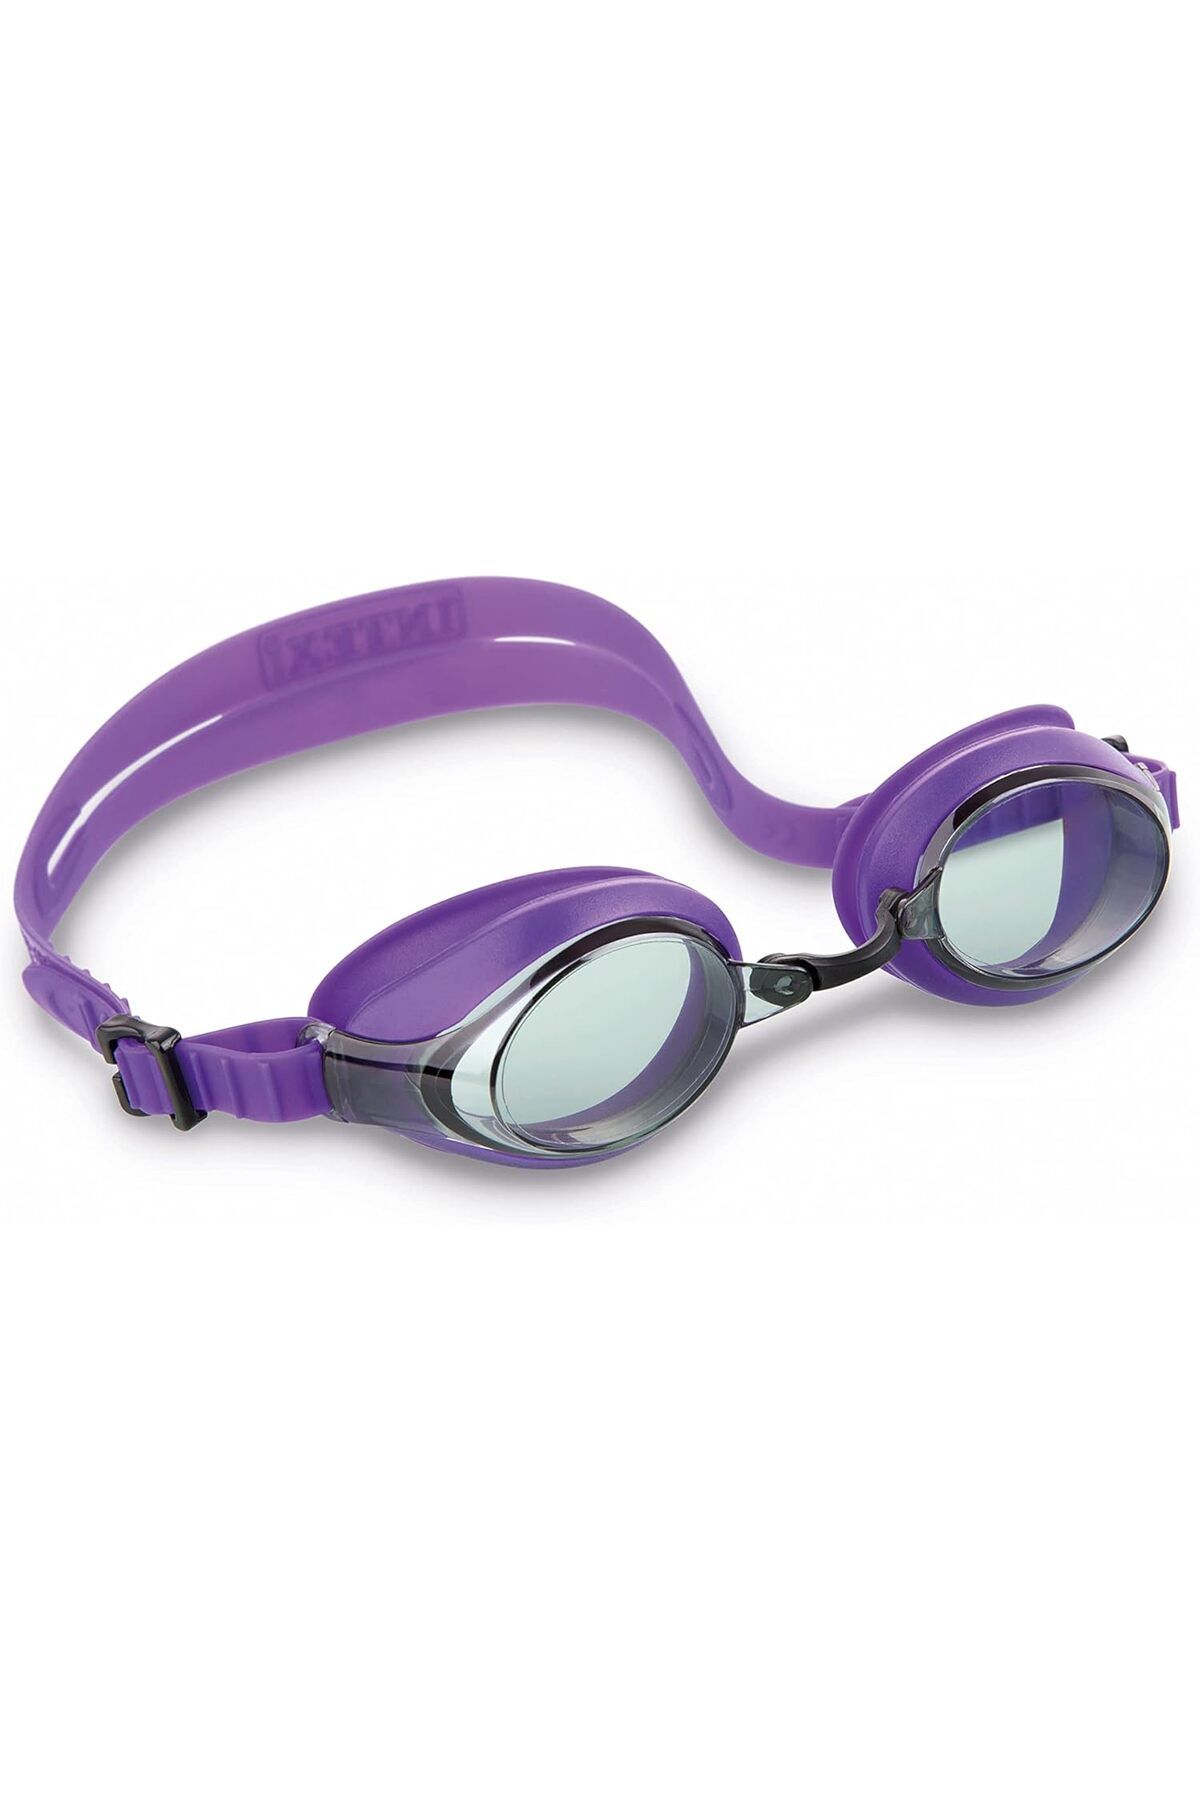 Intex Vakumlu Sporcu Yüzücü Gözlüğü